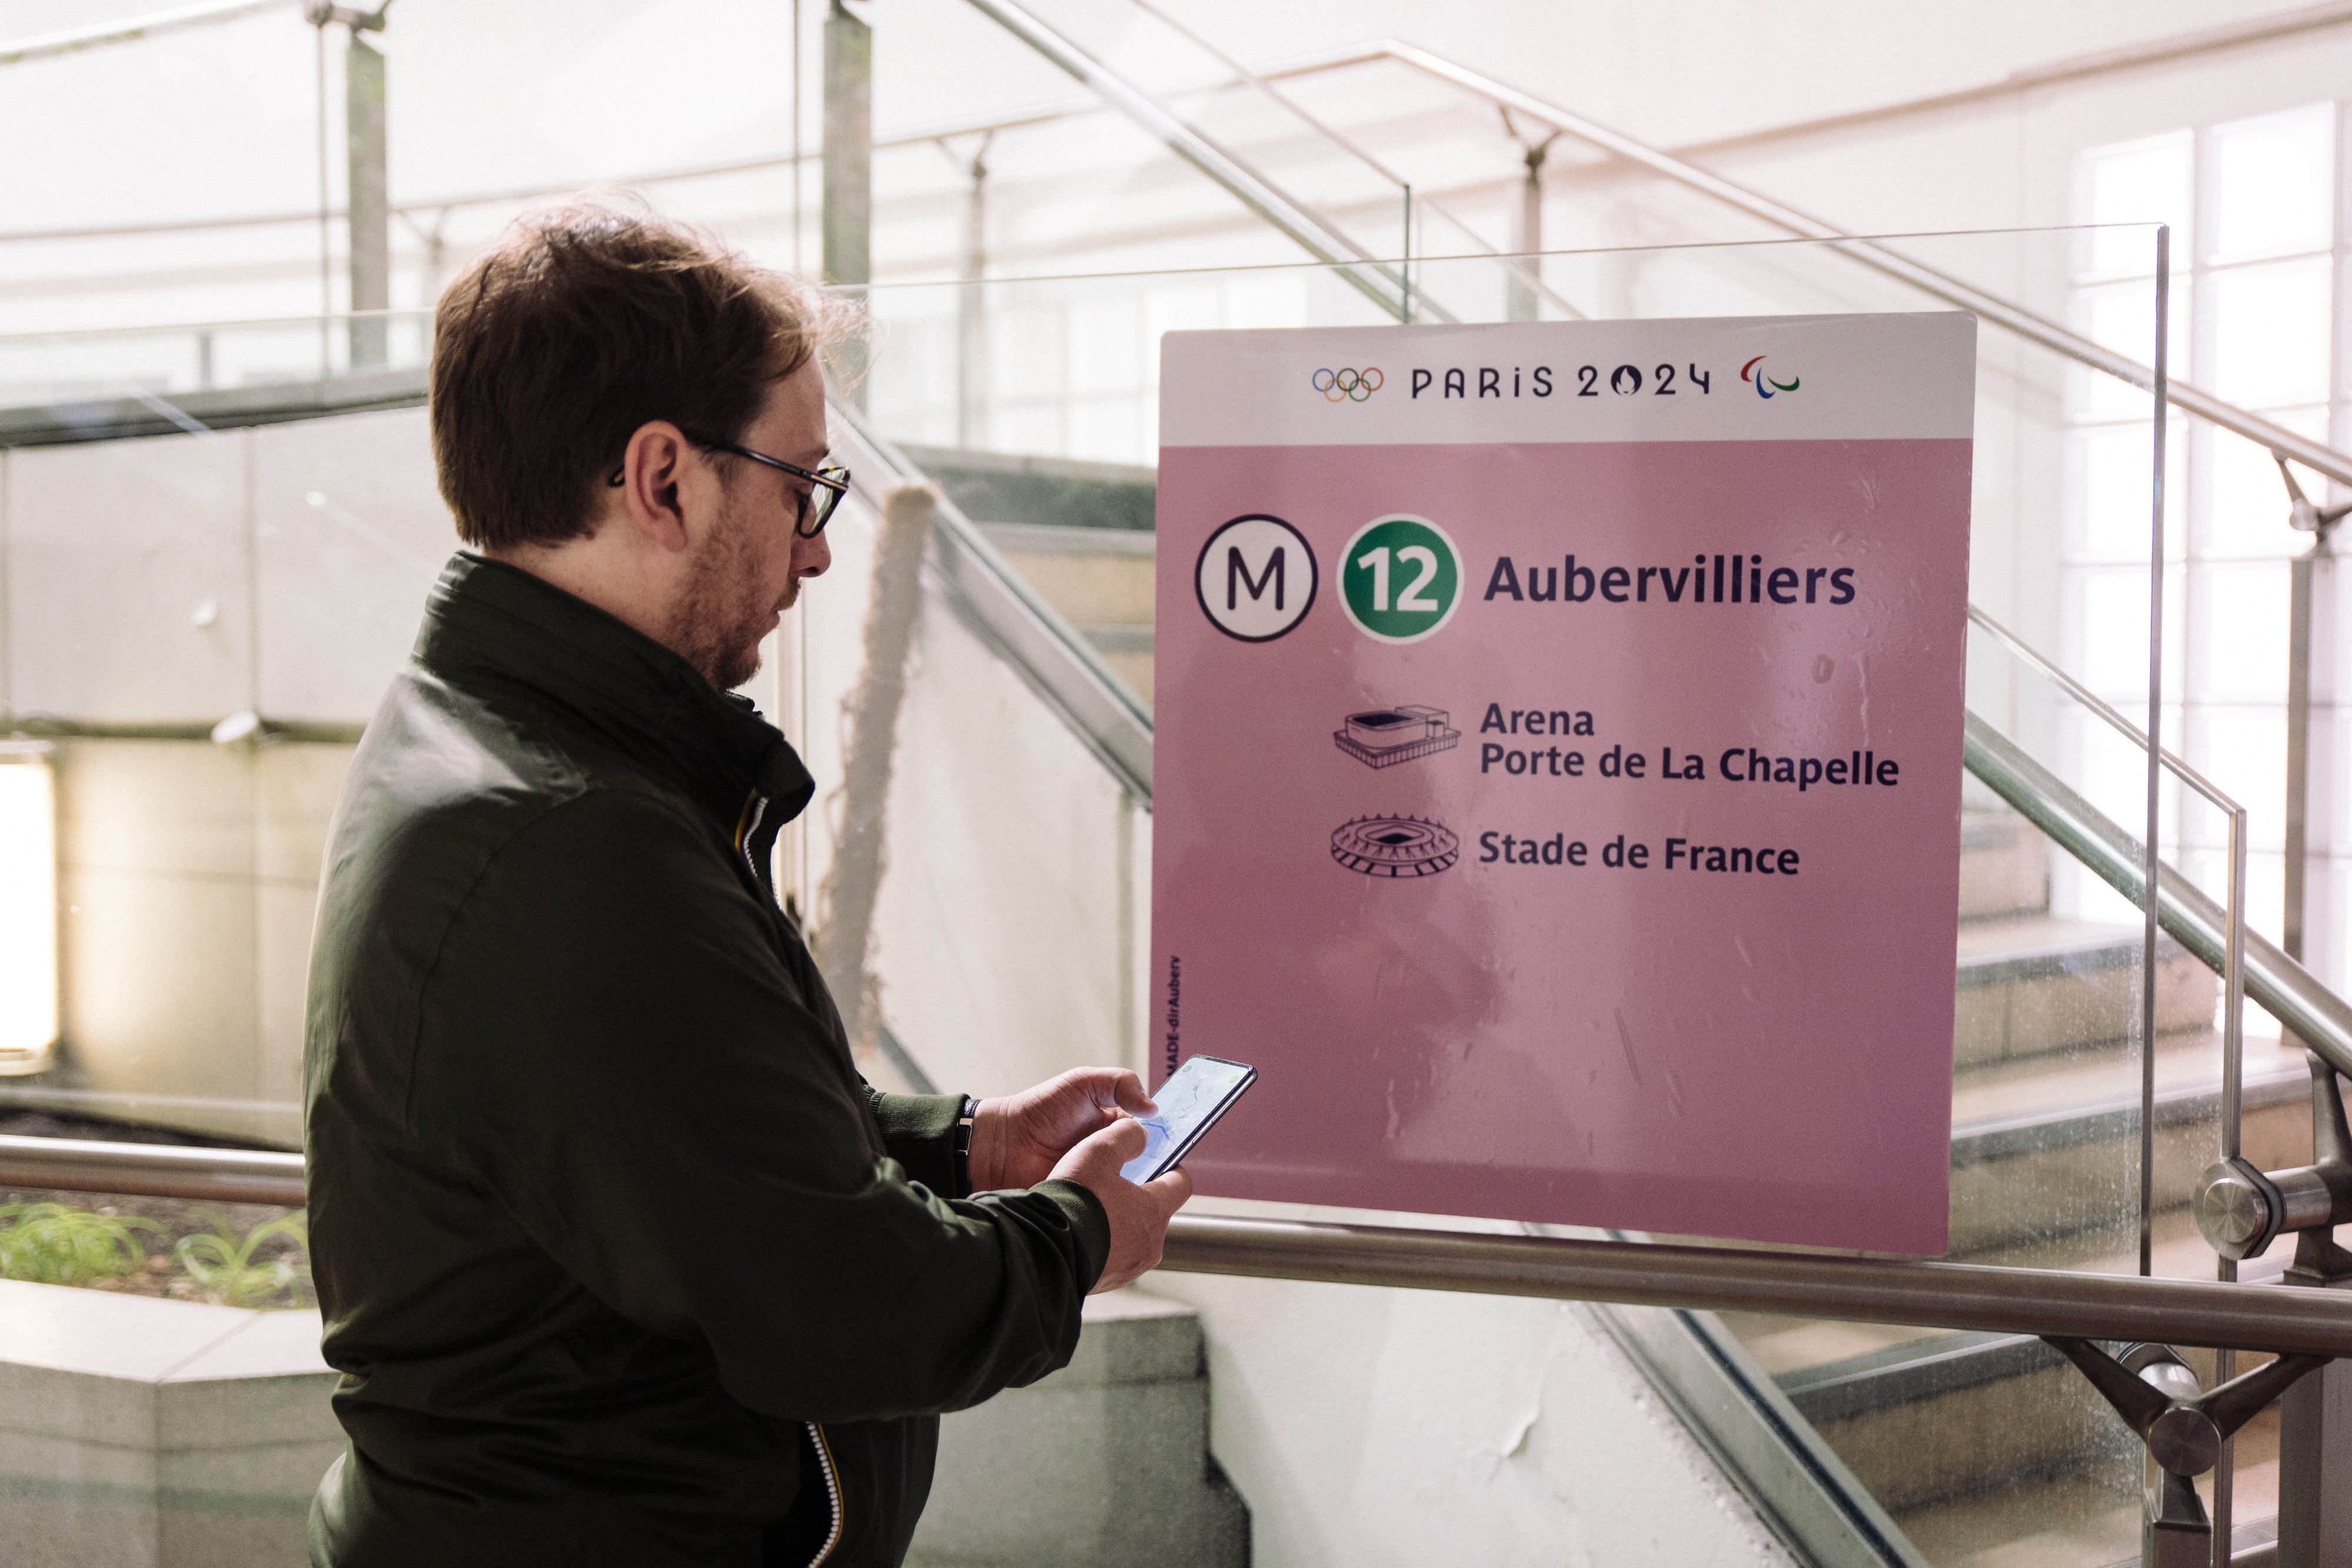 L'application pour smartphone Transport public Paris 2024 permet se simuler ses trajets lors de la périodes des JO, du 26 juillet au 8 septembre. LP/Philippe Labrosse